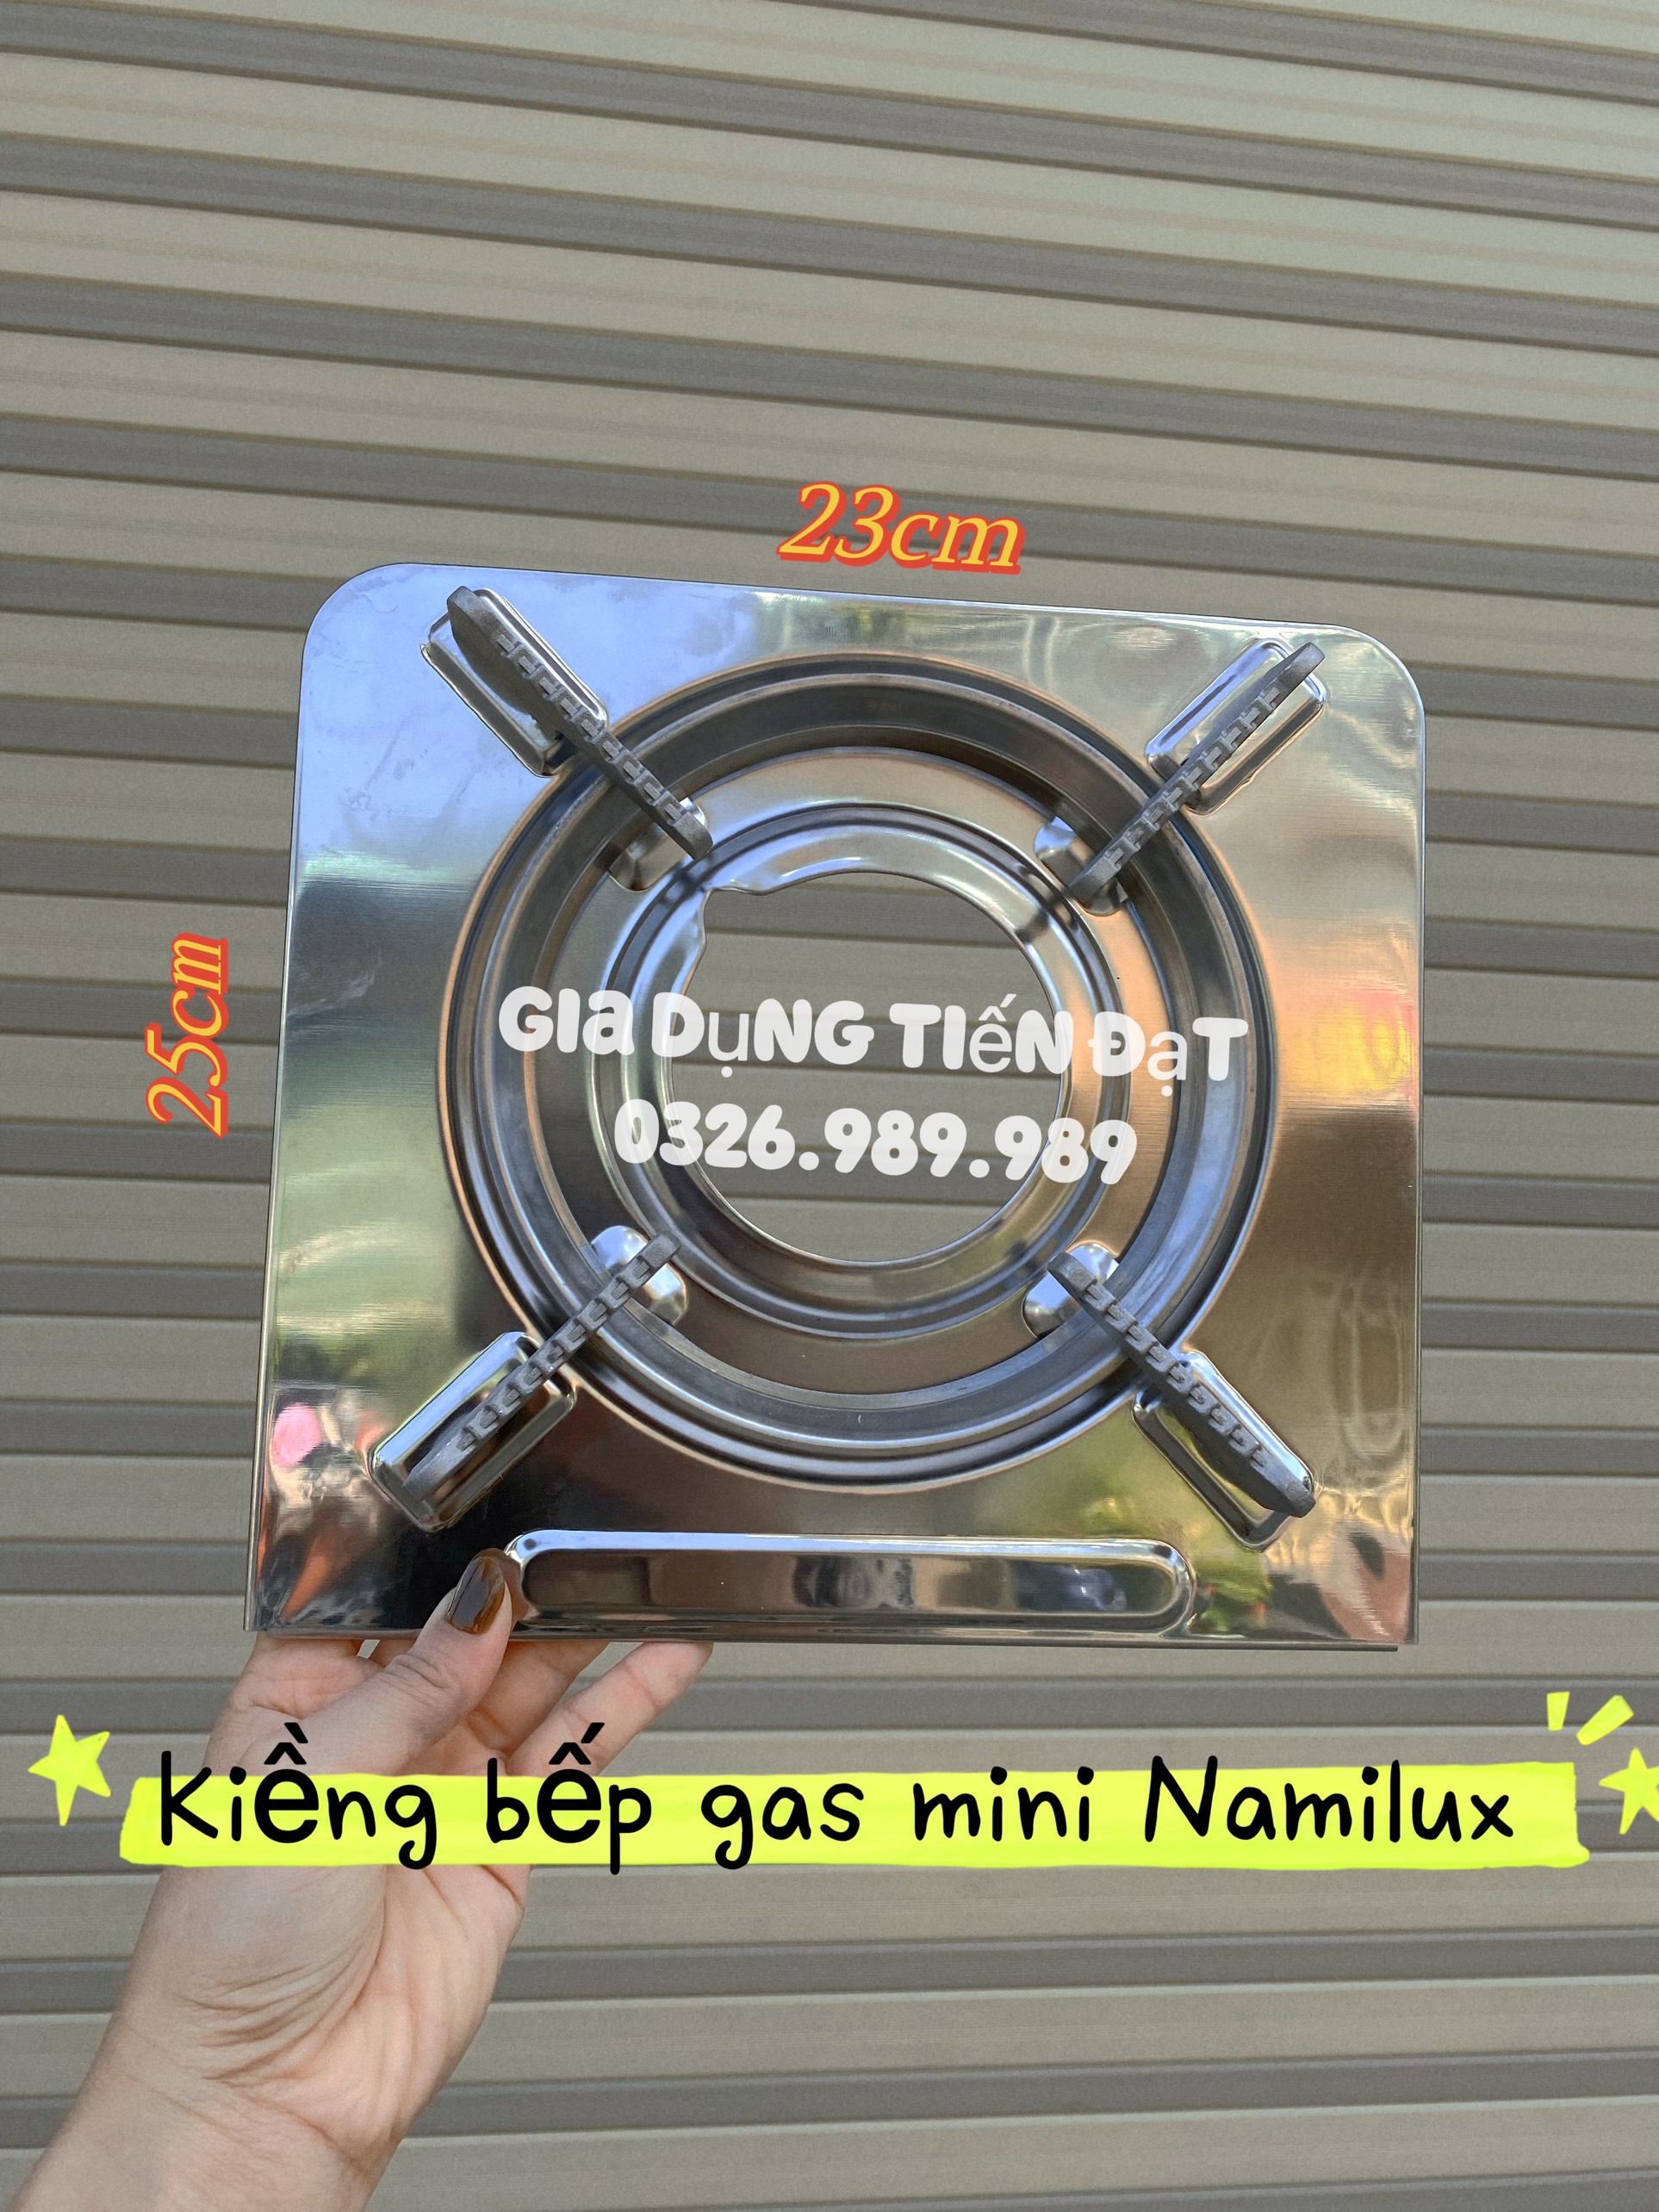 Kiềng bếp gas mini vuông- kiềng bếp gas inox du lịch Namilux- KT 25cm x 23cm- Chính hãng NAMILUX